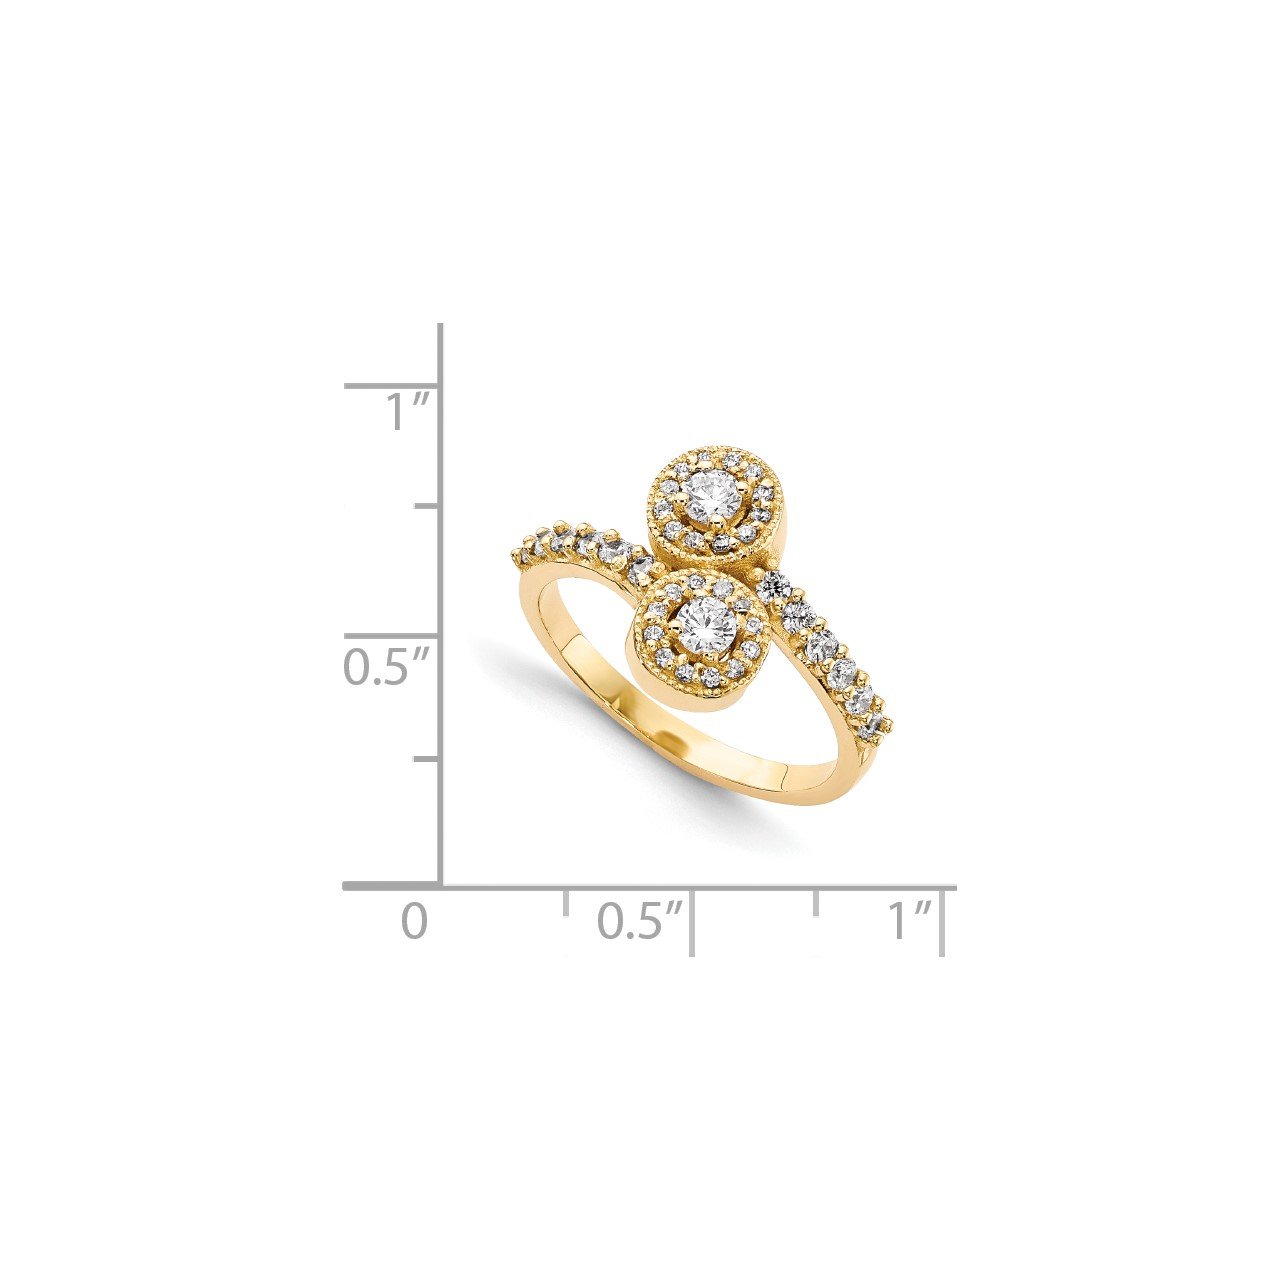 14KY AAA Diamond 2-stone Ring Semi-Mount - 2.3 mm center stones-6